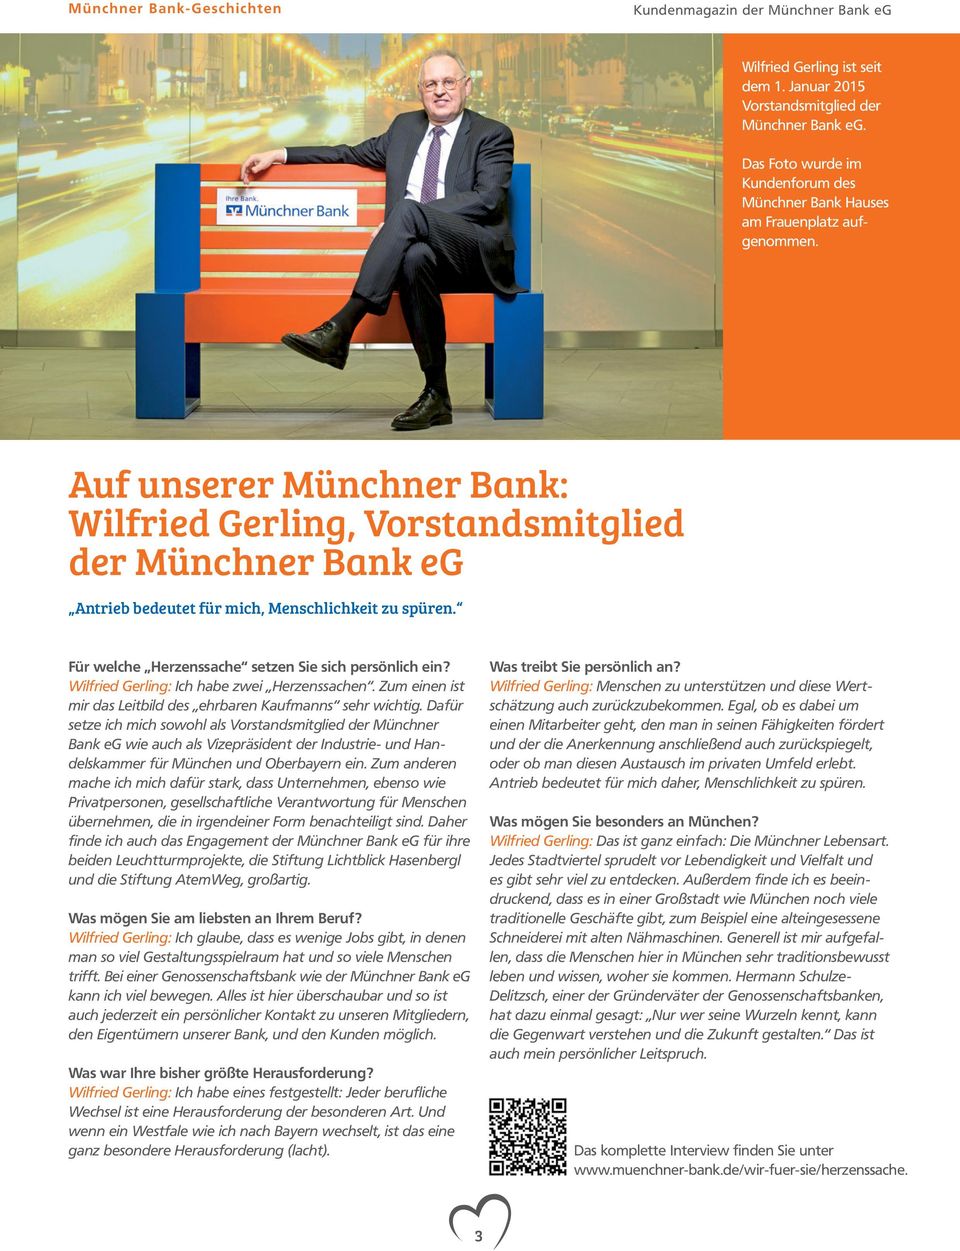 Auf unserer Münchner Bank: Wilfried Gerling, Vorstandsmitglied der Münchner Bank eg Antrieb bedeutet für mich, Menschlichkeit zu spüren. Für welche Herzenssache setzen Sie sich persönlich ein?